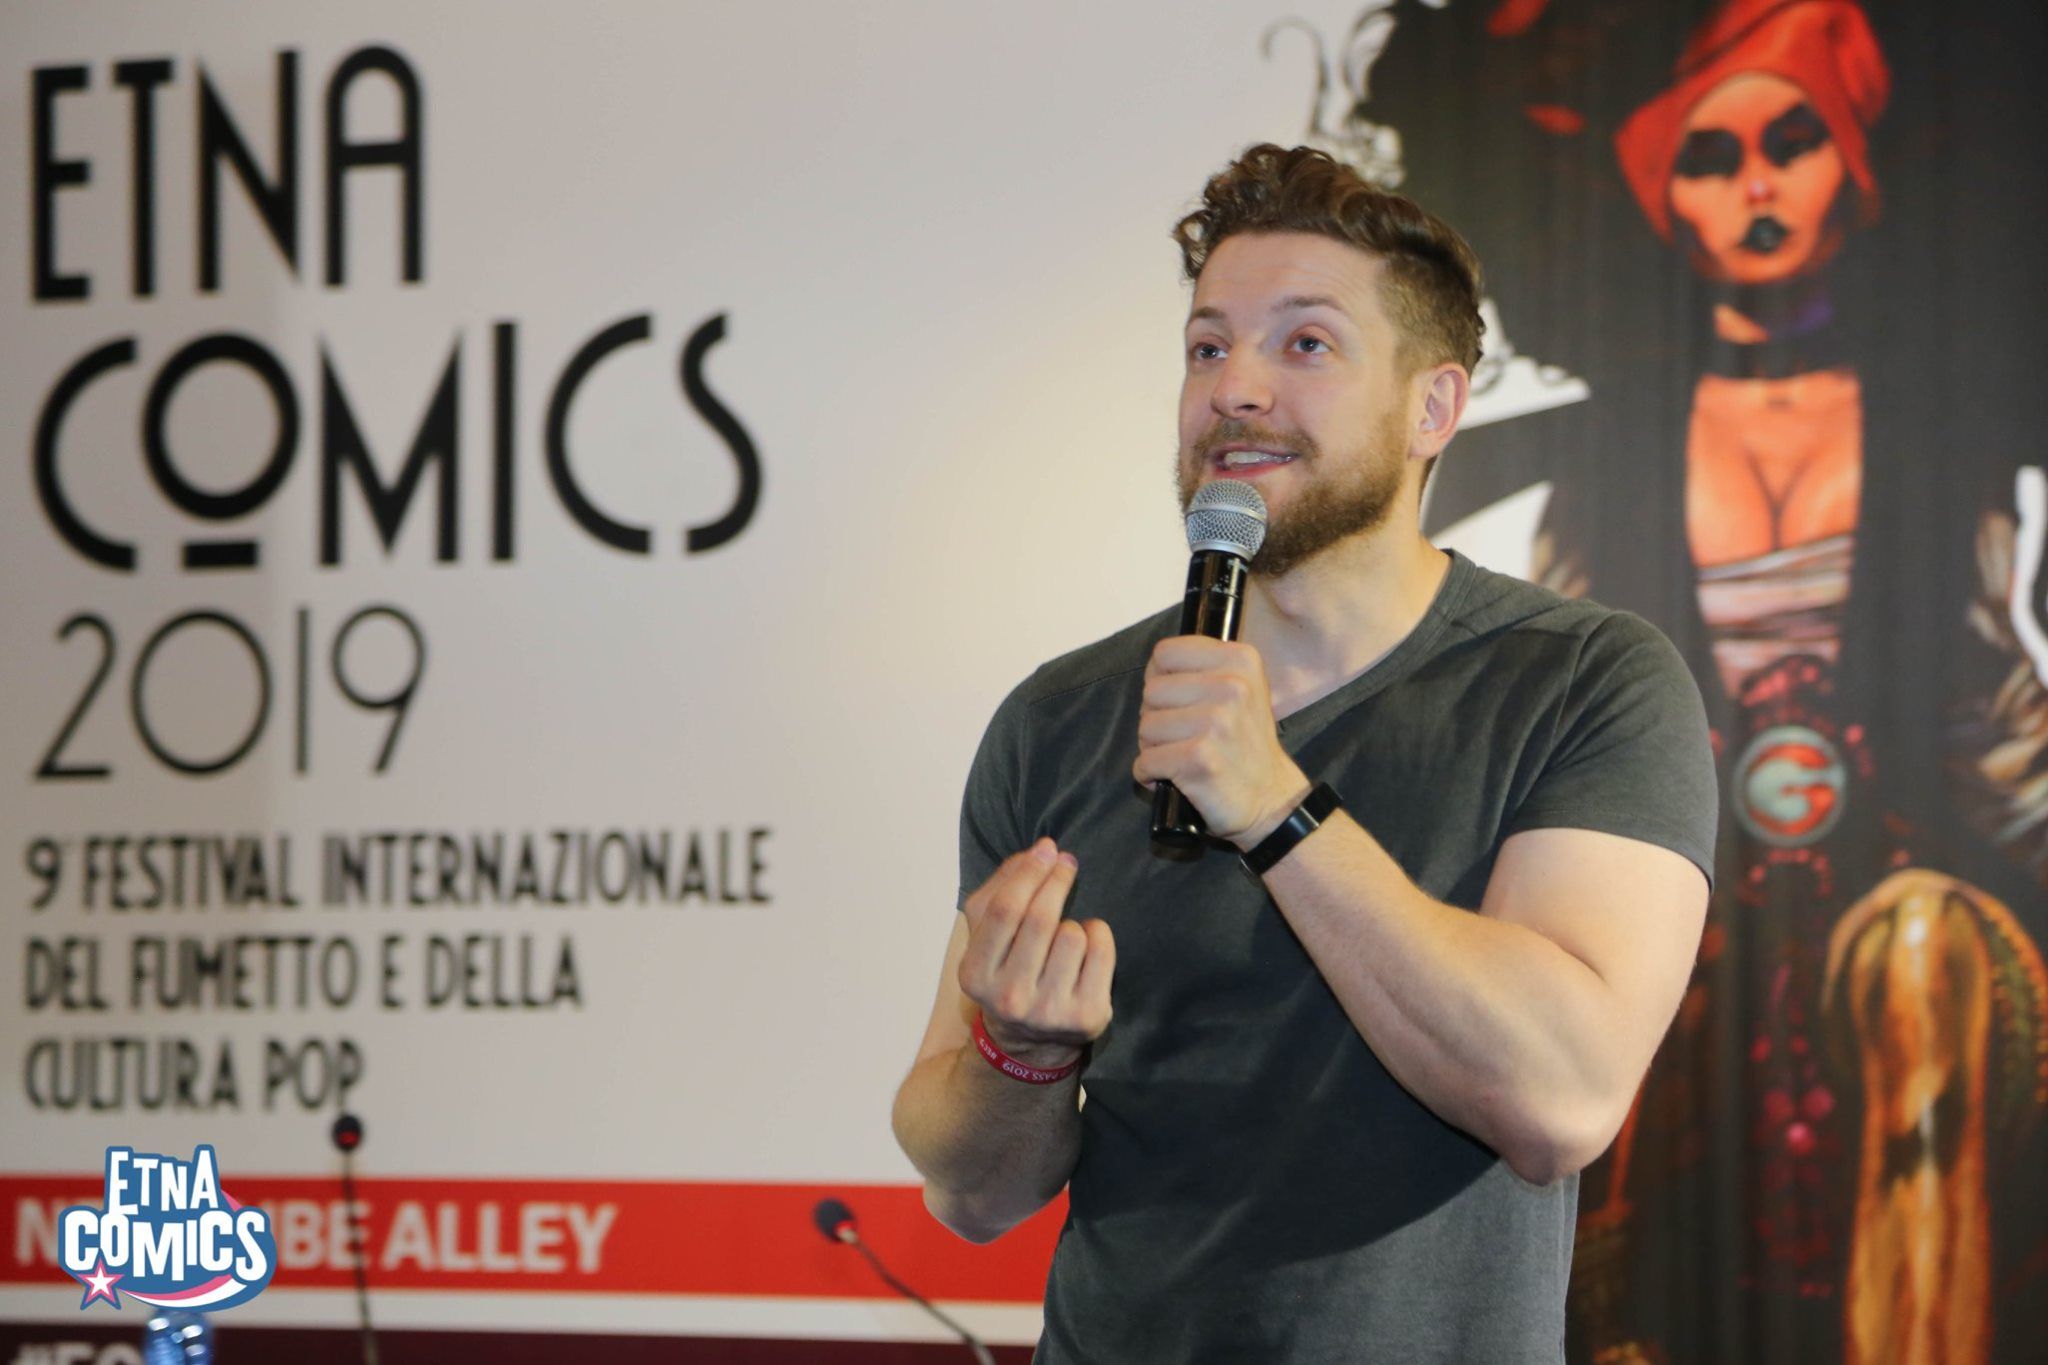 Maurizio Merluzzo ad Etna Comics 2019